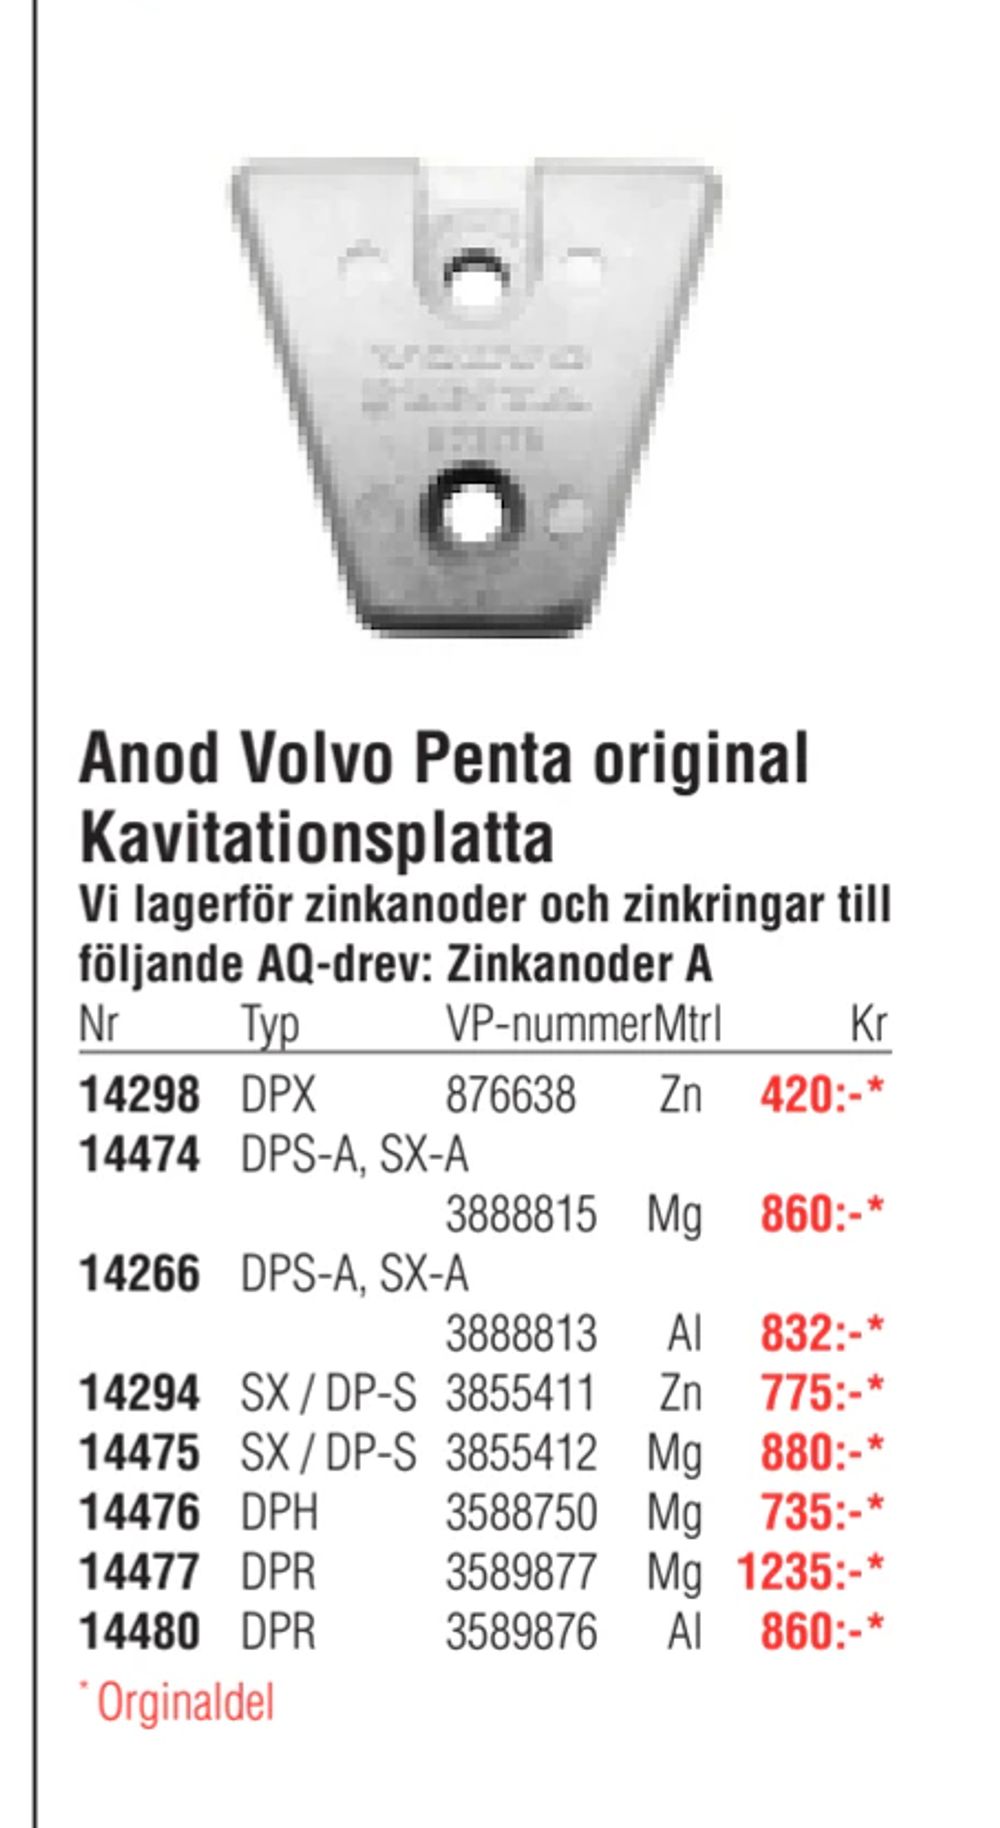 Erbjudanden på Anod Volvo Penta original Kavitationsplatta från Erlandsons Brygga för 420 kr